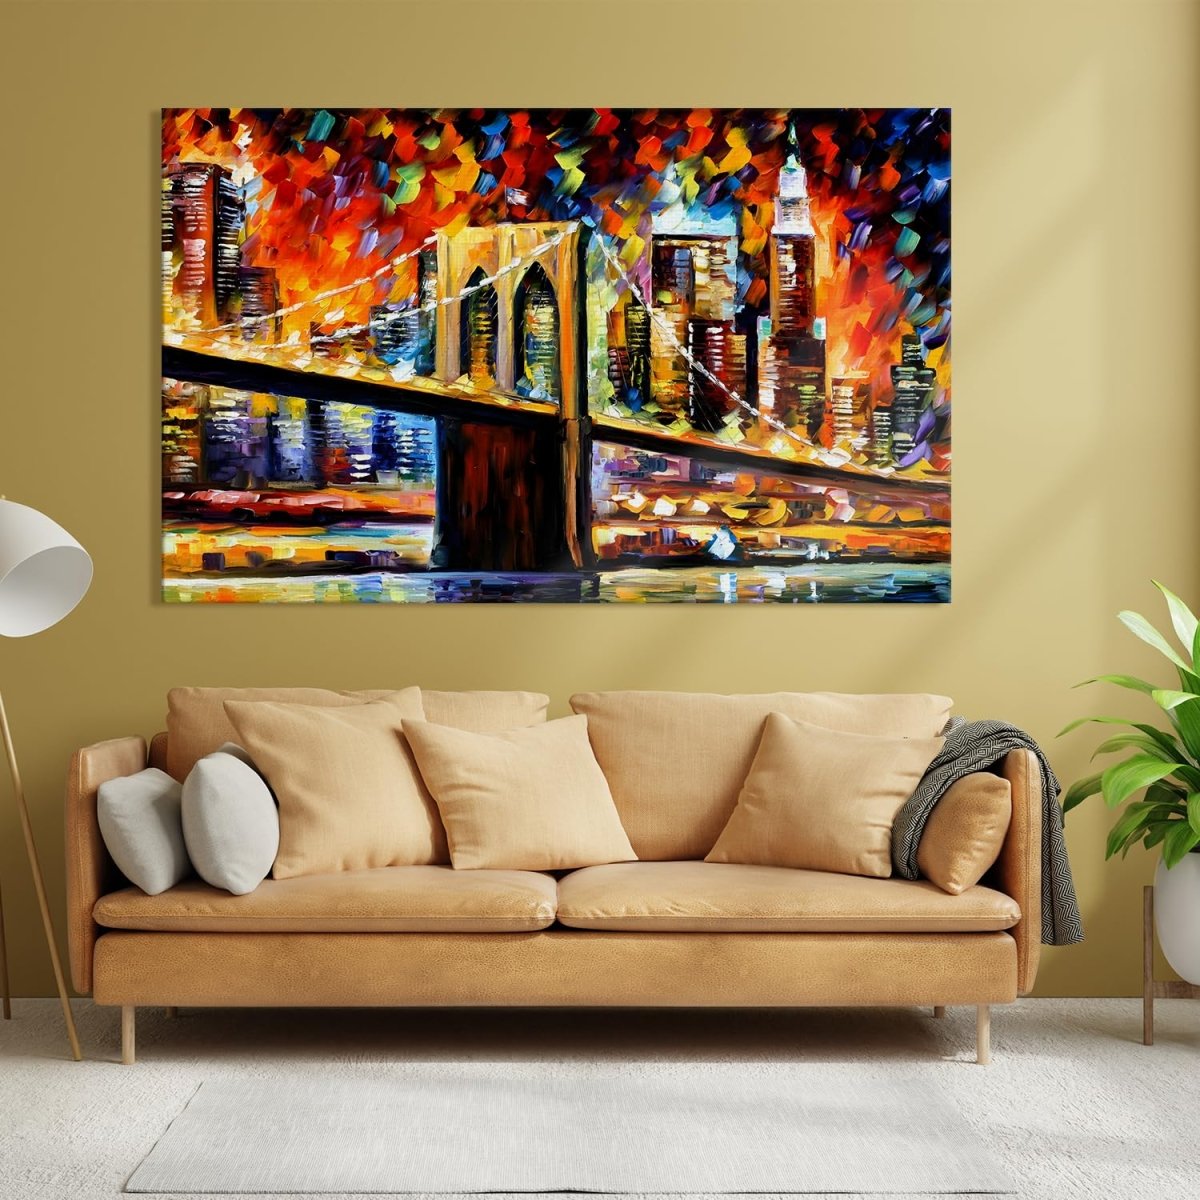 Brooklyn Bridge in Dreams Canvas Wall Art (48 x 30 Inches)